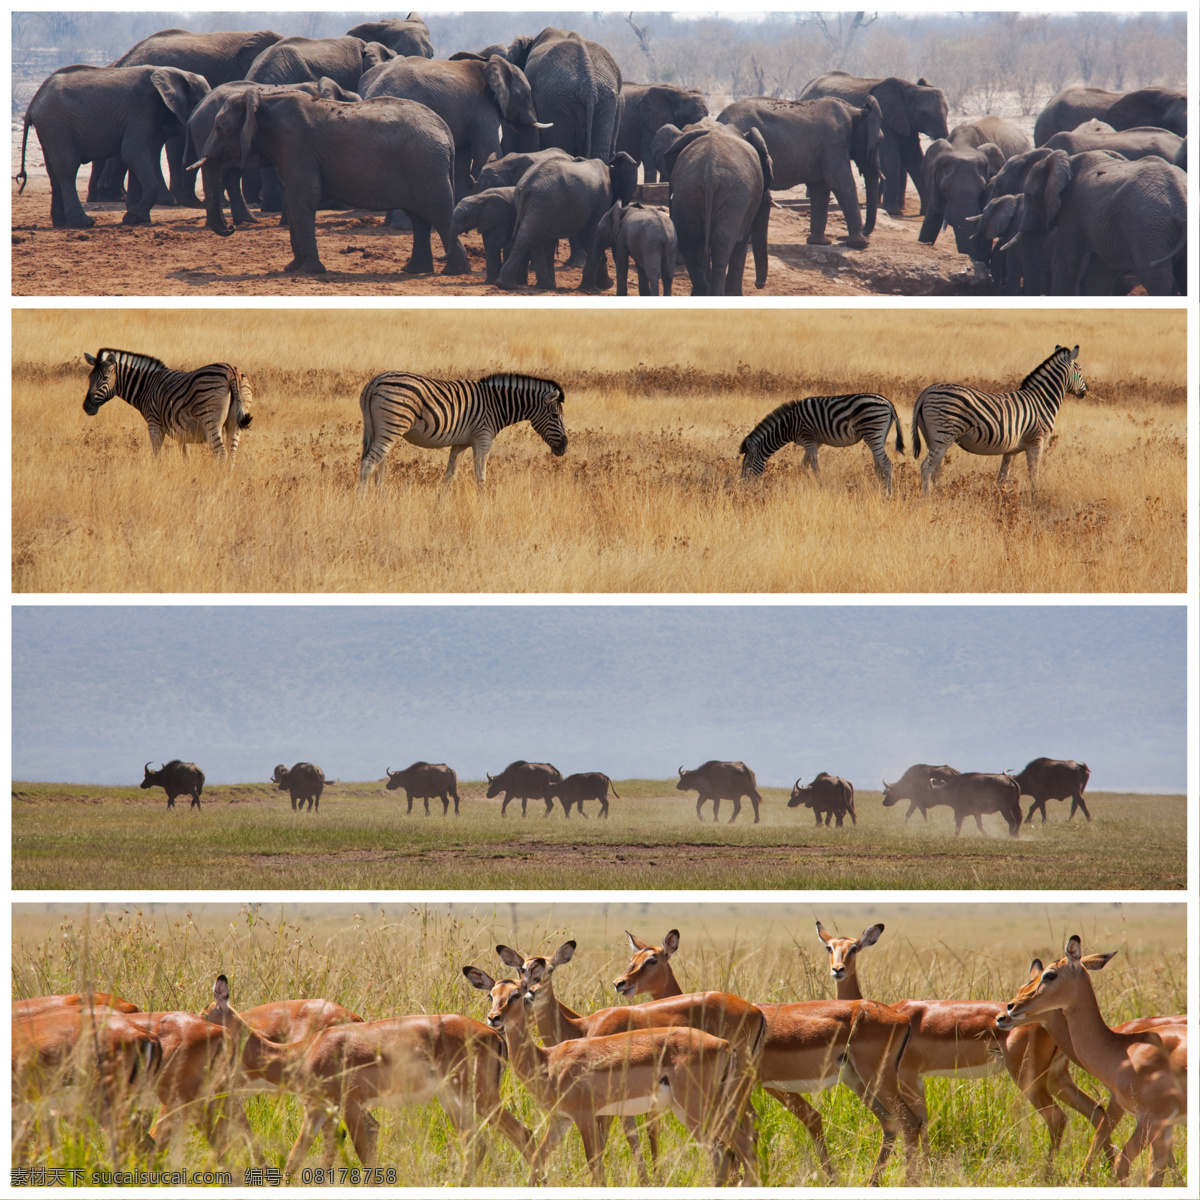 非洲 草原 动物 非洲草原动物 大象 斑马 野牛 羚羊 野生动物 动物世界 陆地动物 生物世界